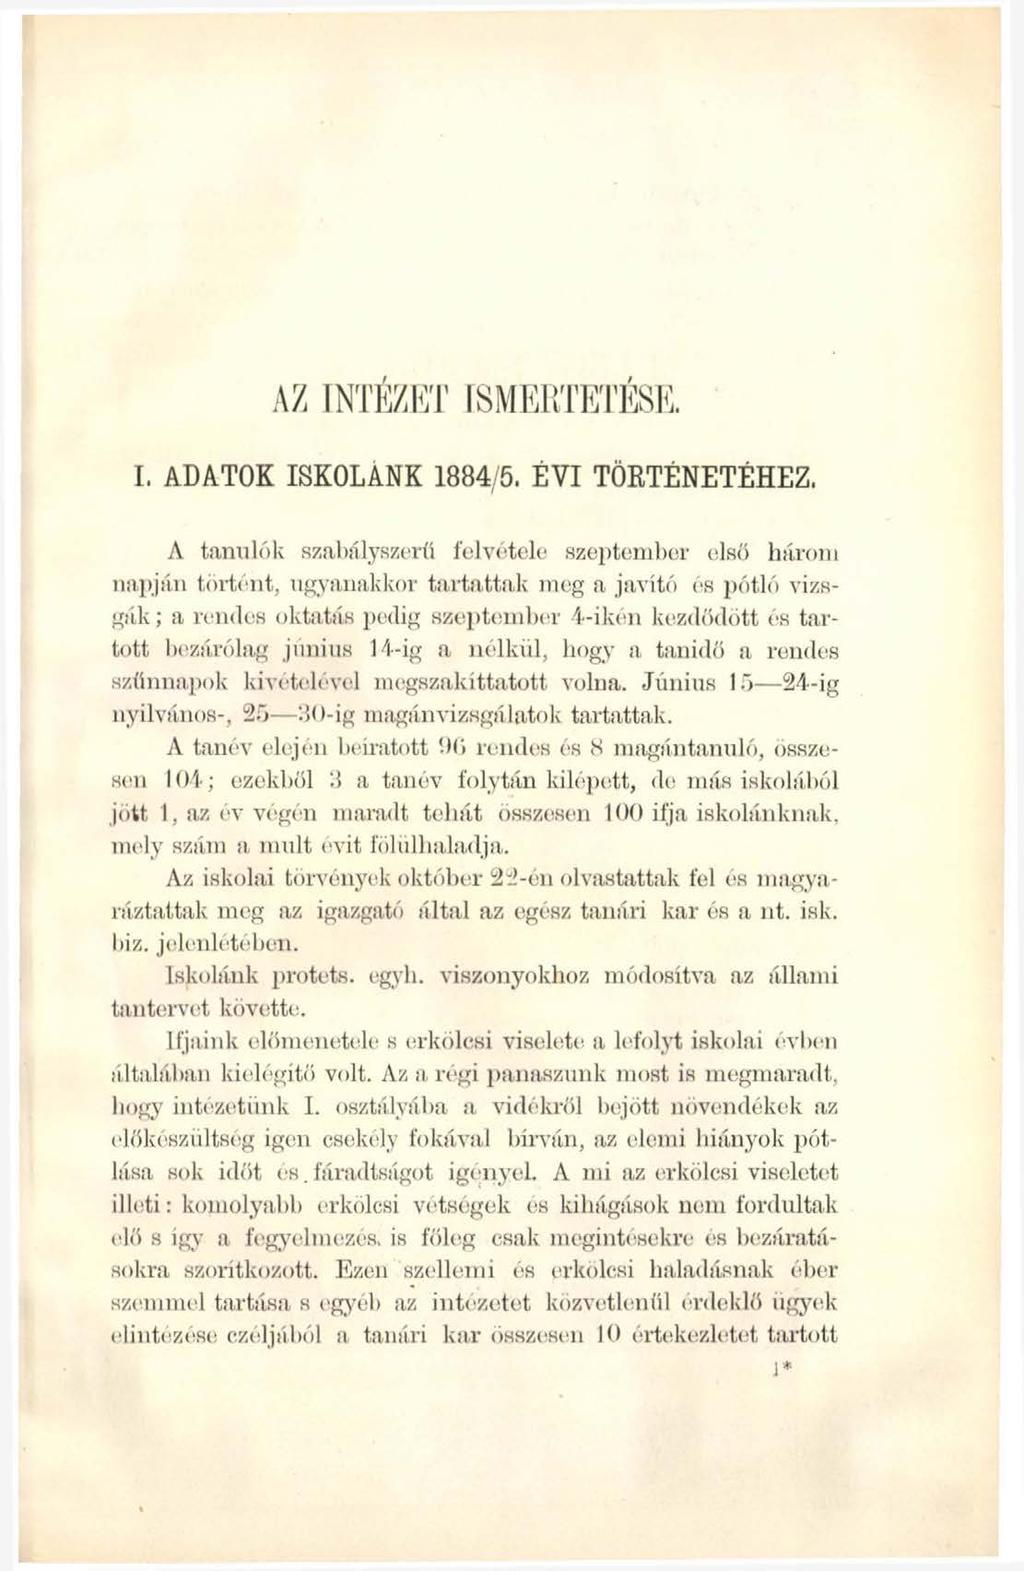 I, ADATOK ISKOLÁNK 1884/5. ÉVI TÖRTÉNETÉHEZ.